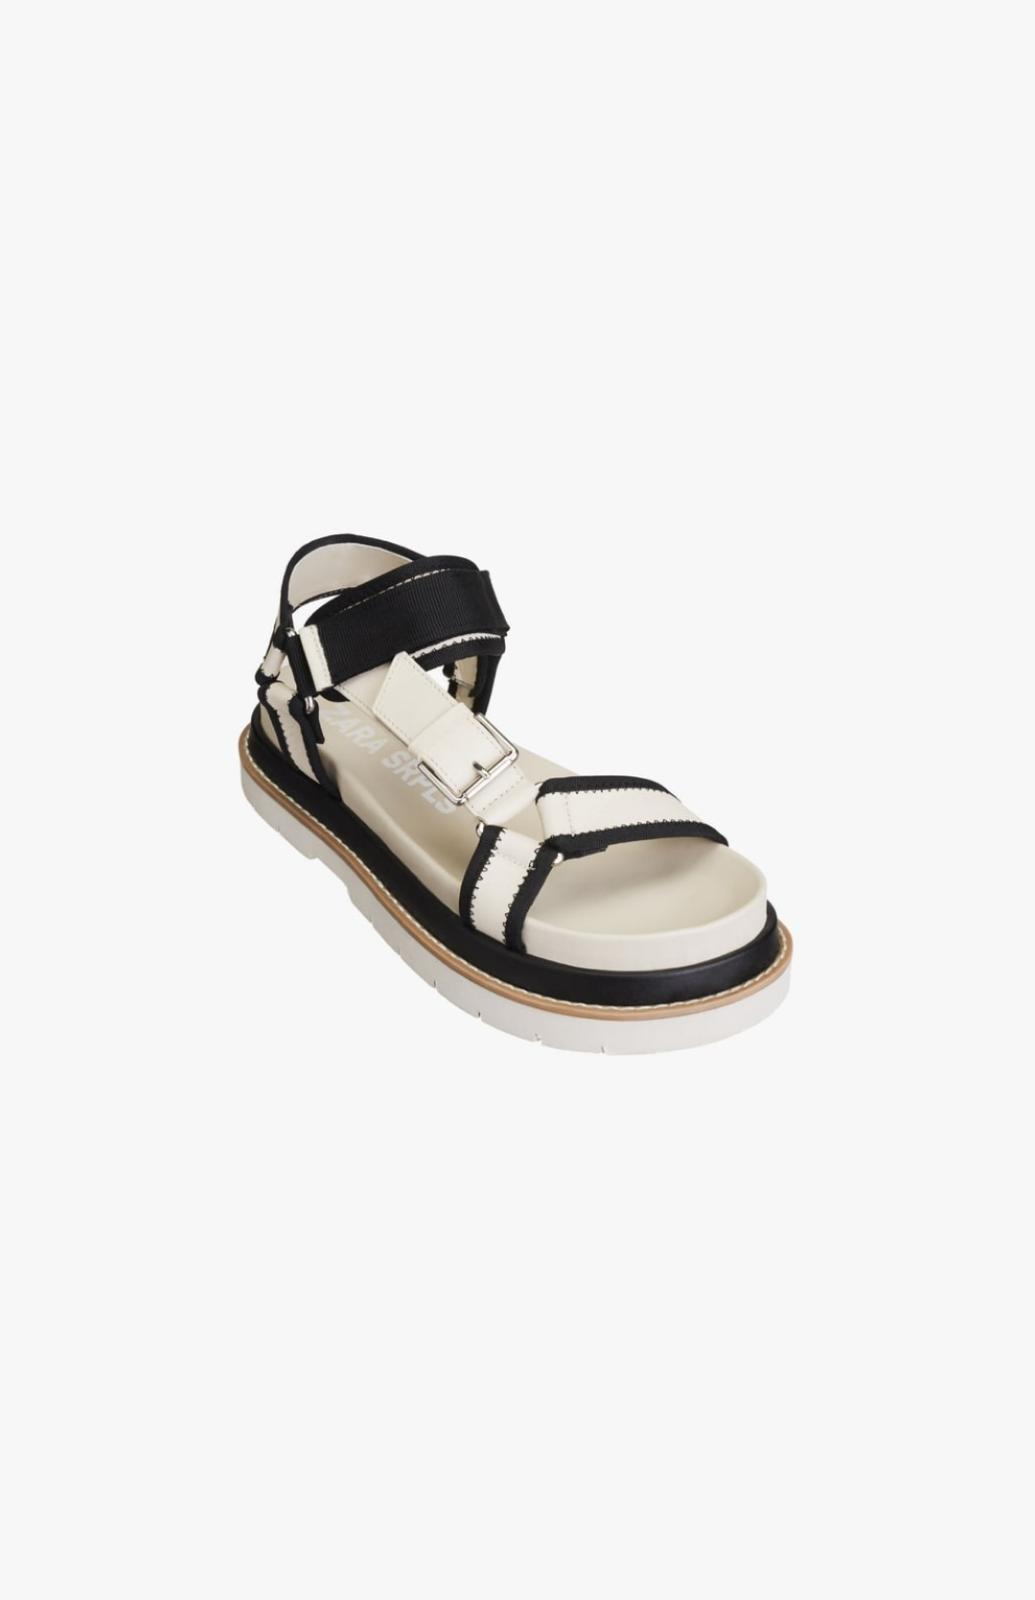 Zapato tipo sandalia plana de piel de color blanco. 